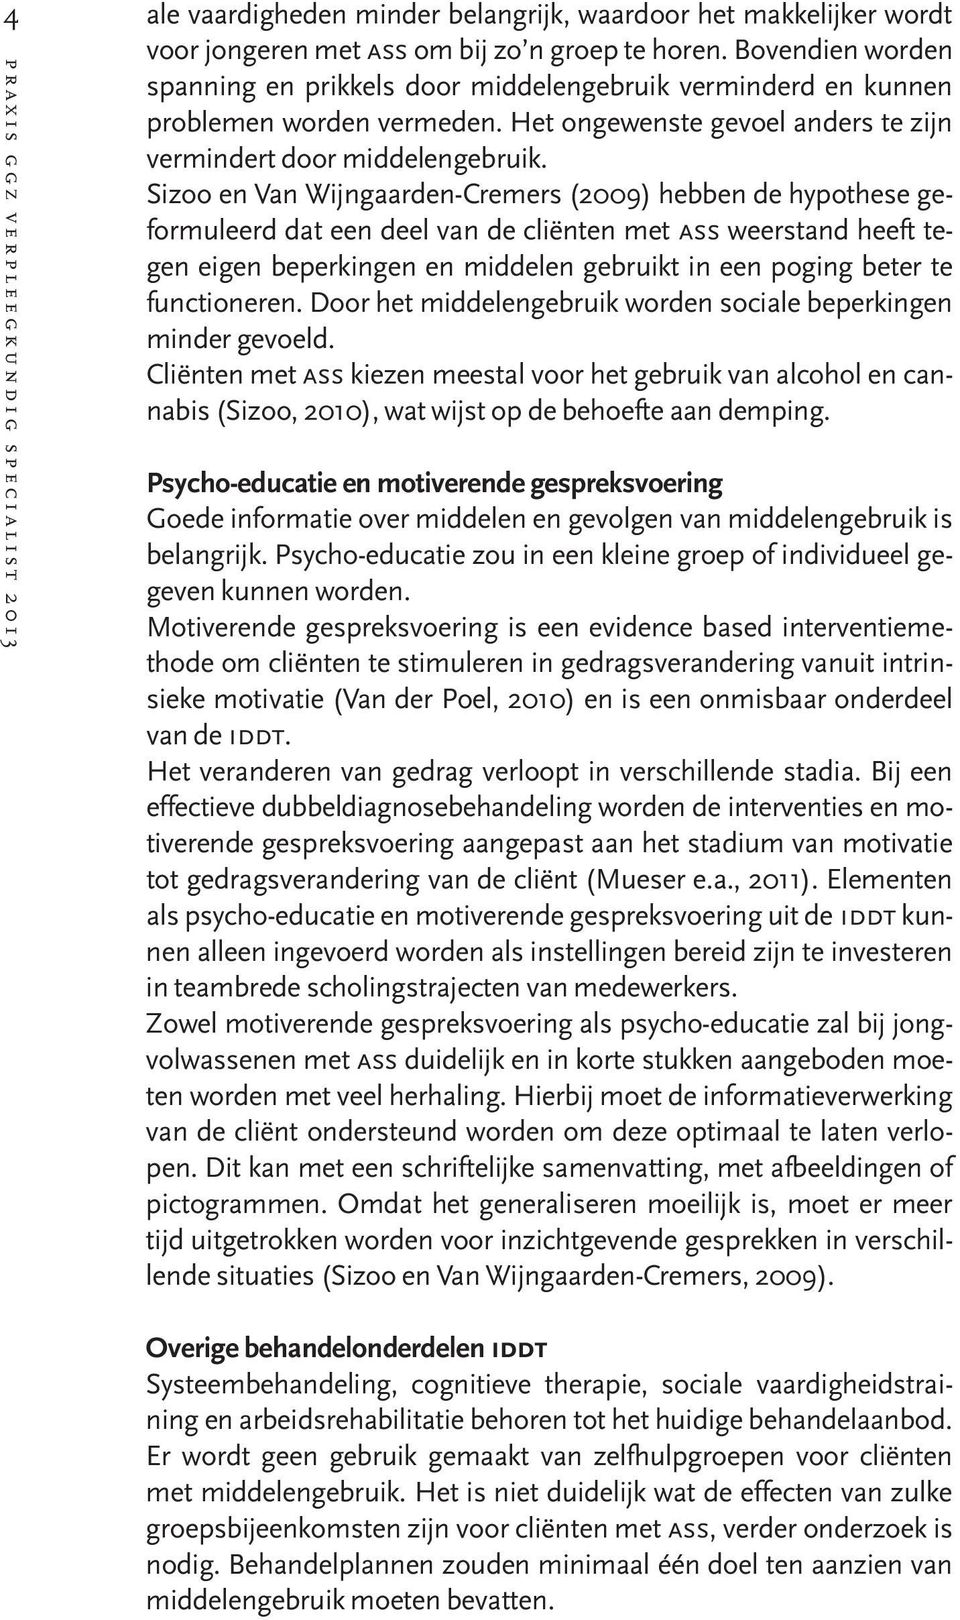 Sizoo en Van Wijngaarden-Cremers (2009) hebben de hypothese geformuleerd dat een deel van de cliënten met ass weerstand heeft tegen eigen beperkingen en middelen gebruikt in een poging beter te